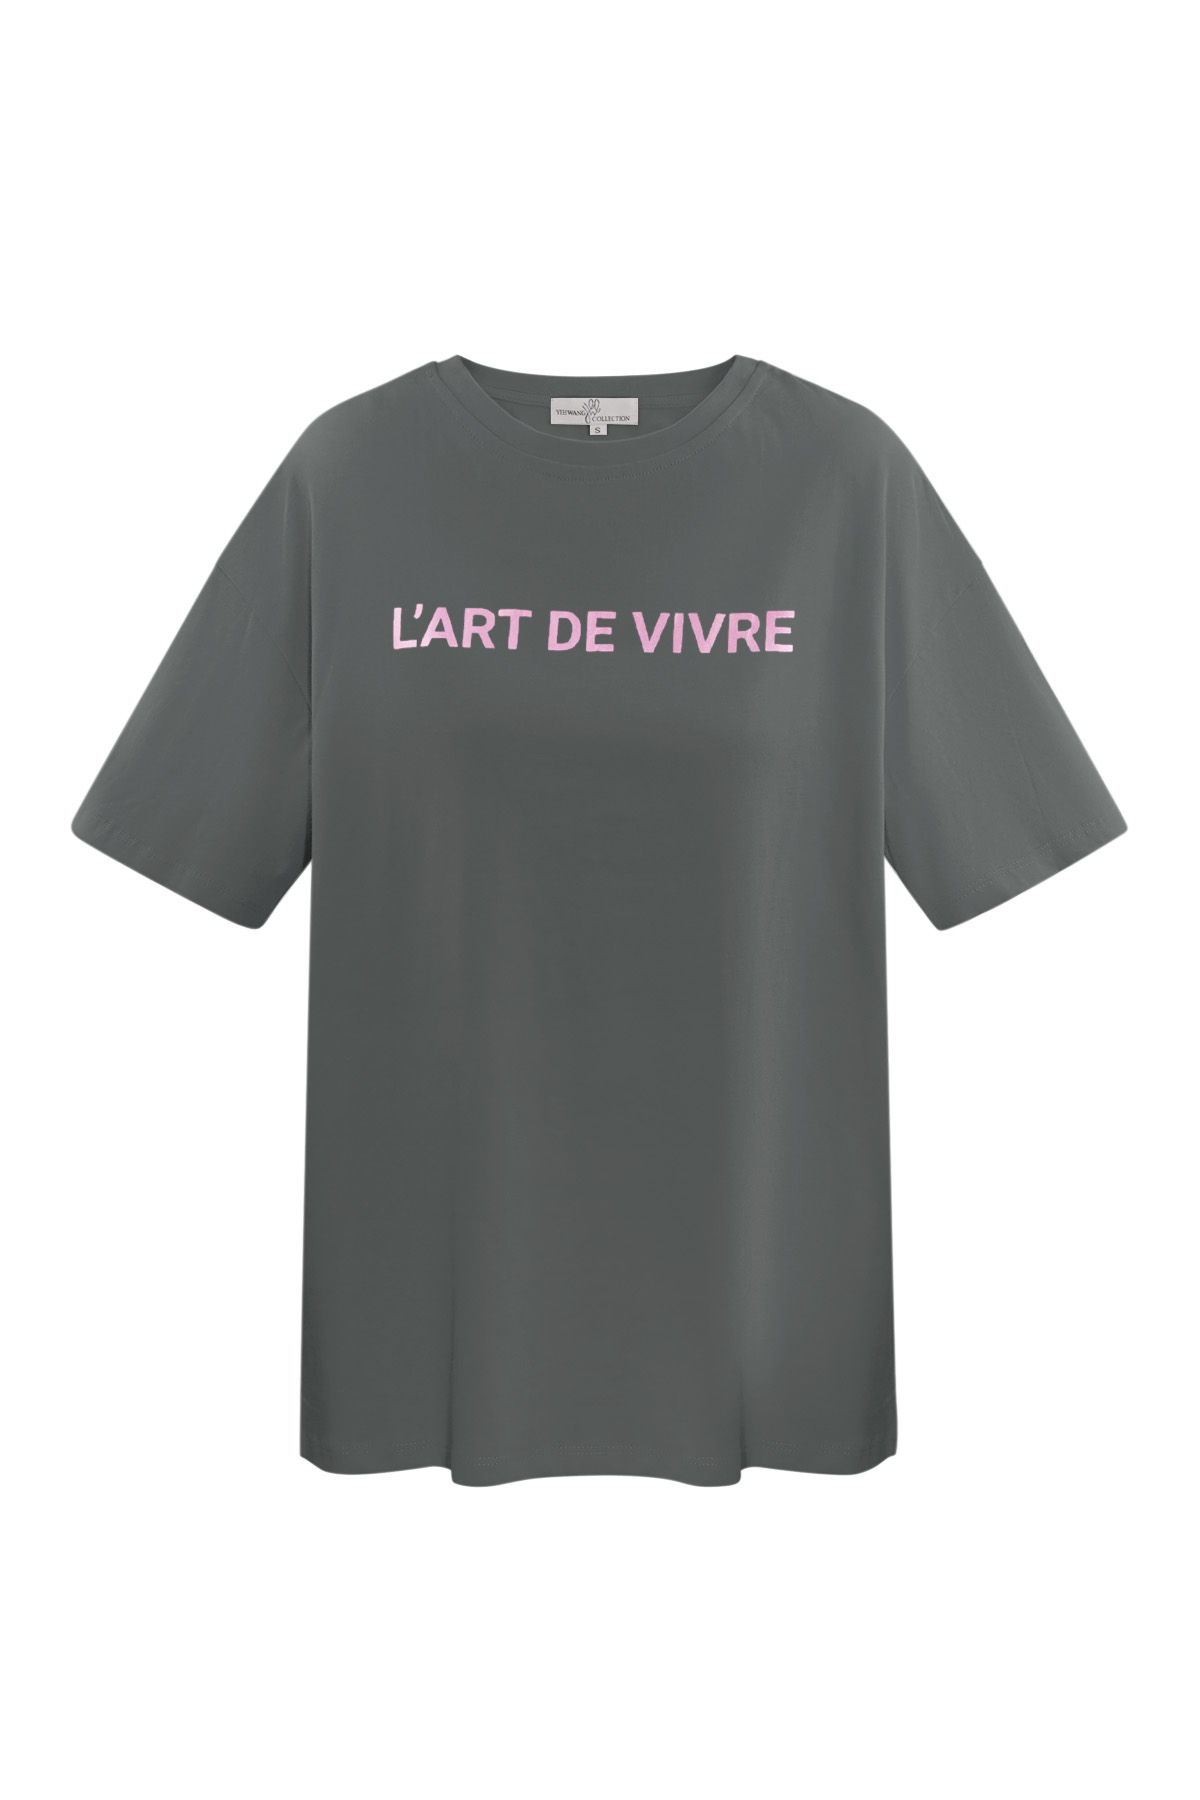 Camiseta l'art de vivre - gris rosa